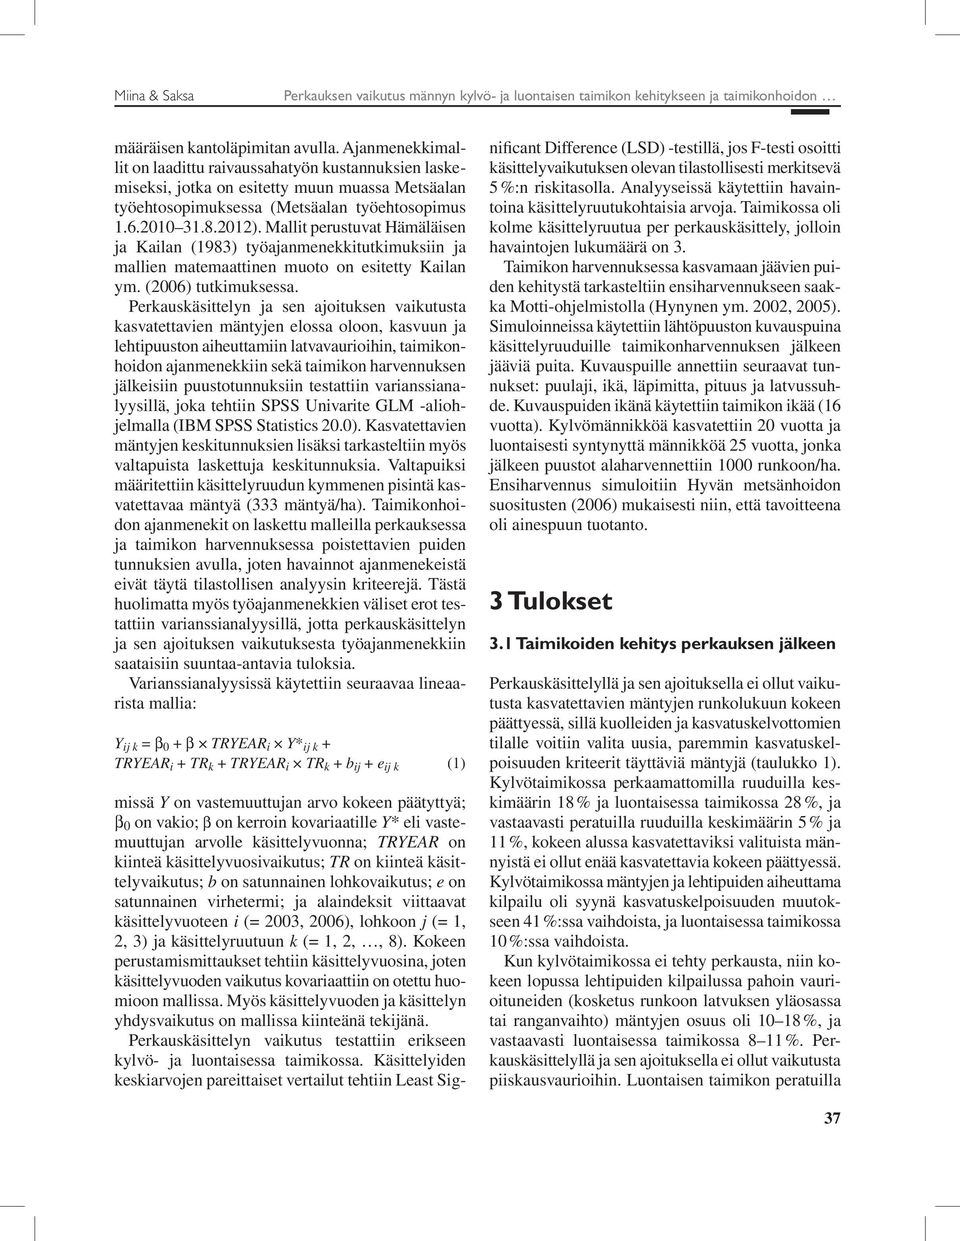 Mallit perustuvat Hämäläisen ja Kailan (1983) työajanmenekkitutkimuksiin ja mallien matemaattinen muoto on esitetty Kailan ym. (2006) tutkimuksessa.